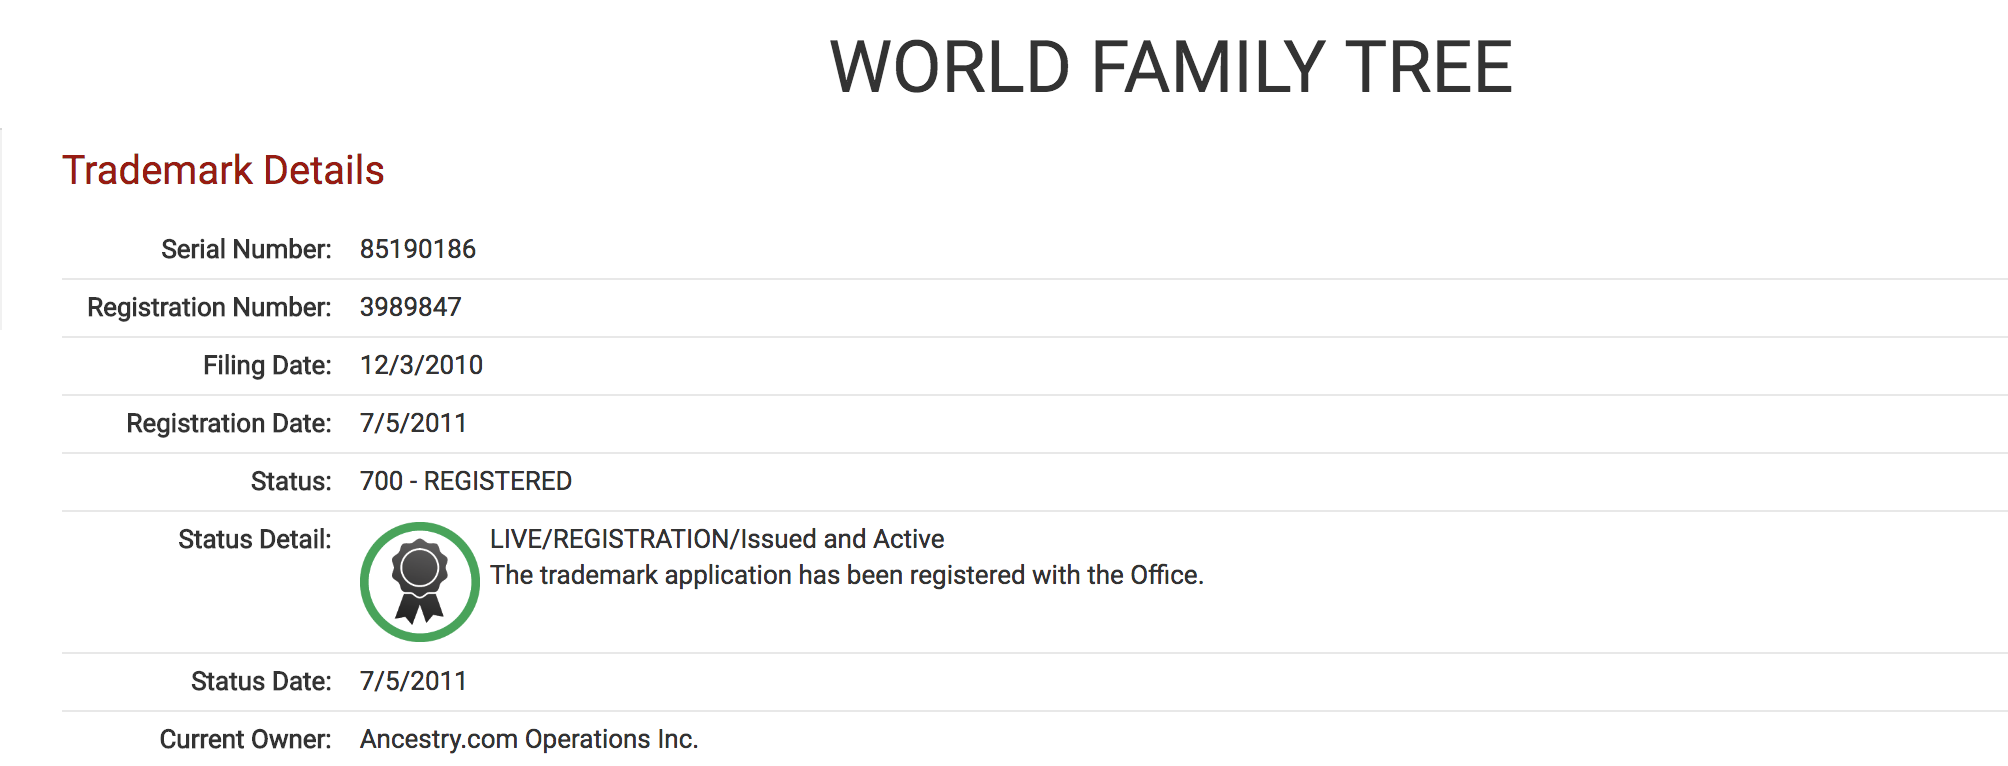 World Family Tree Trademark